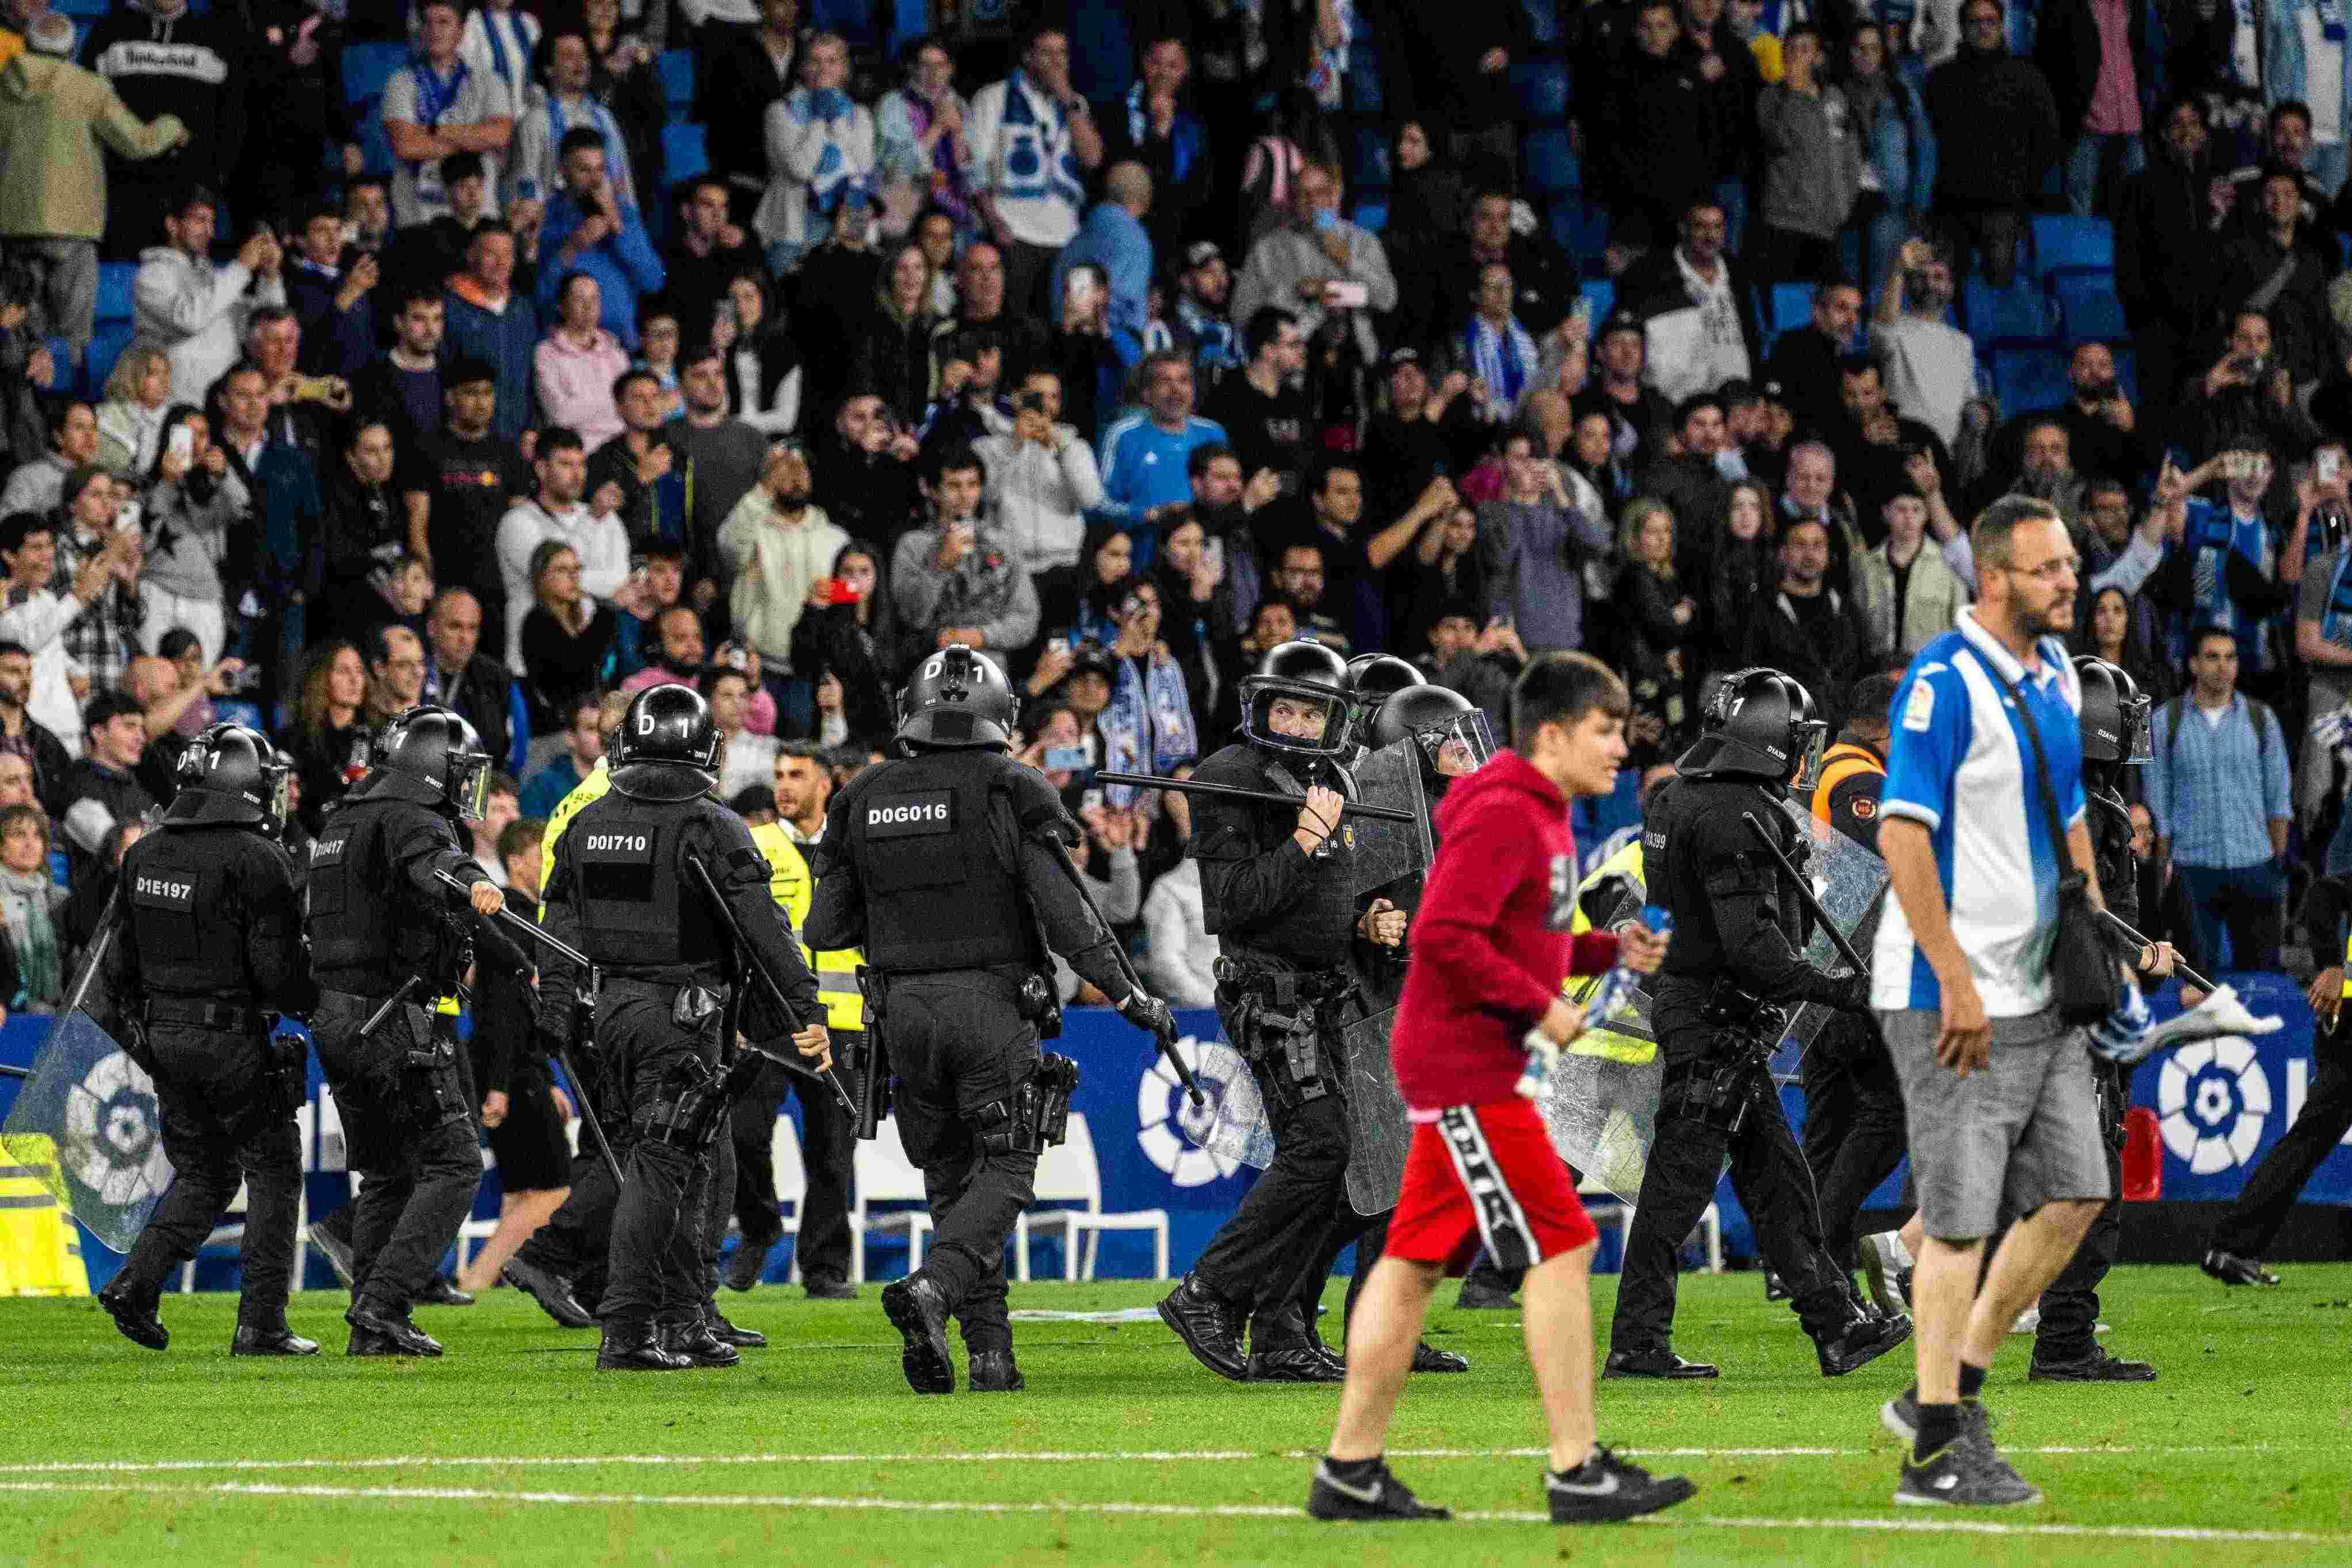 Els Mossos detenen més implicats en l'assalt violent al camp de l'Espanyol del partit contra el Barça